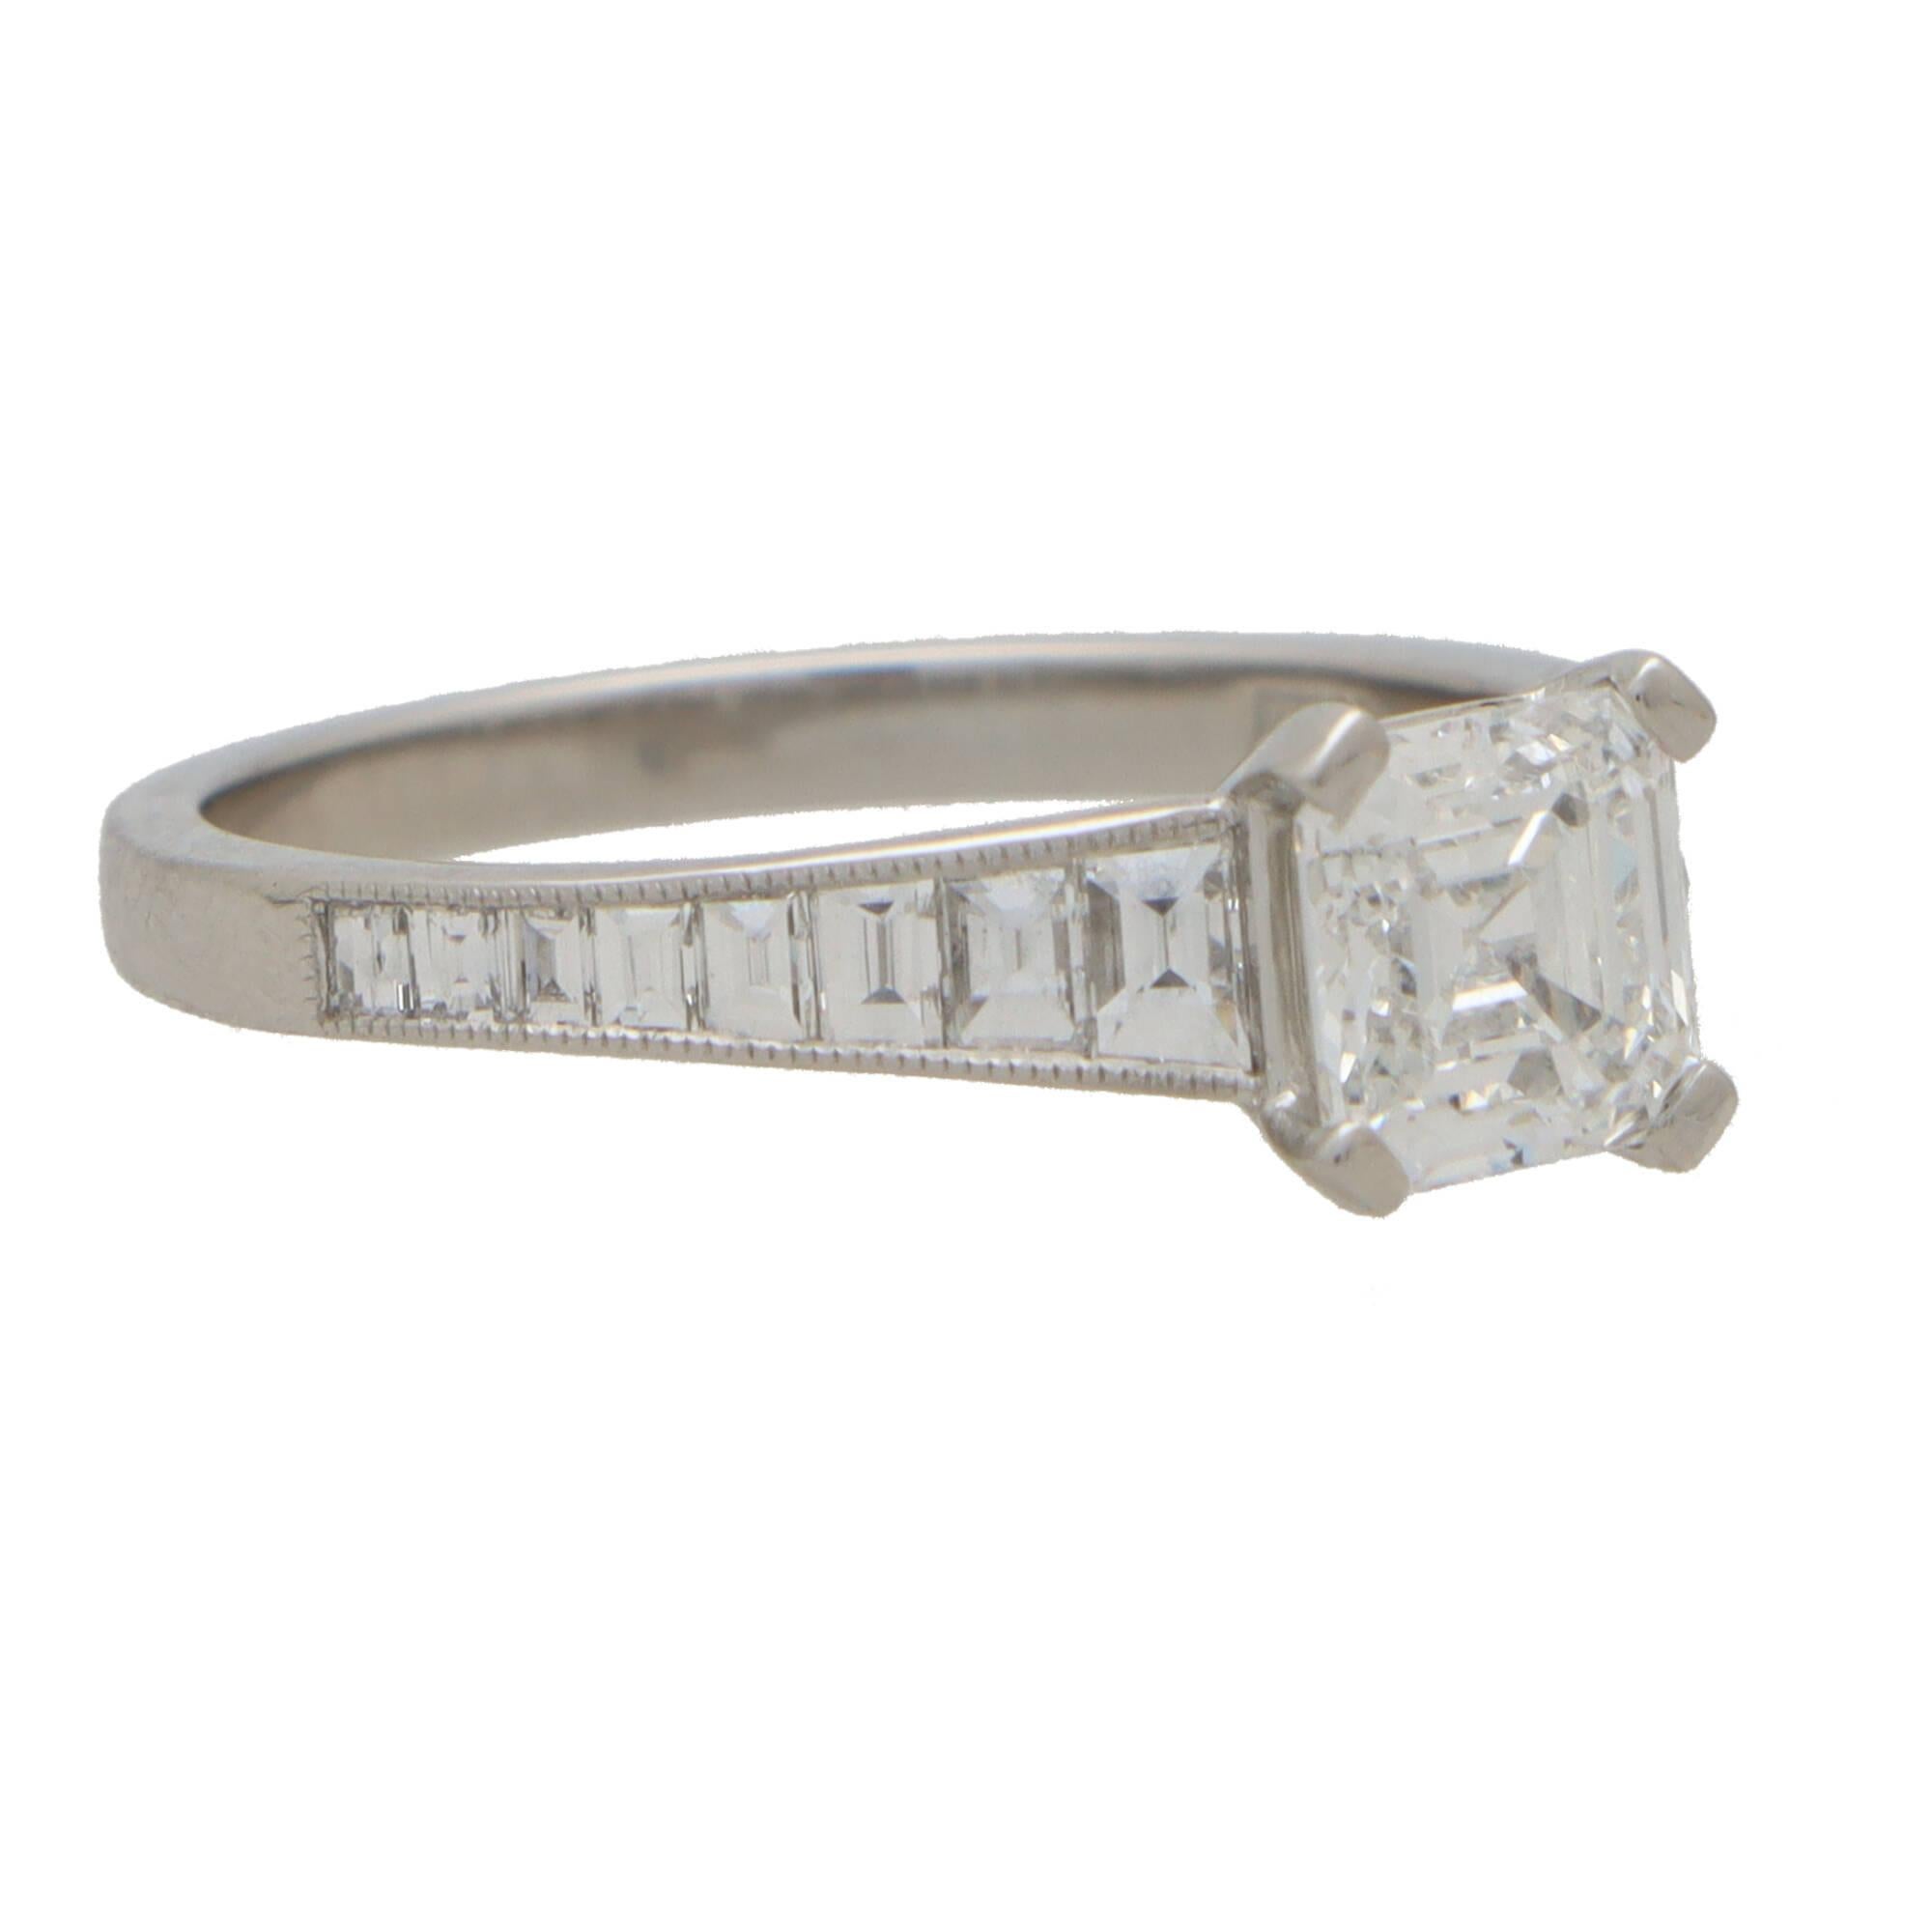  Ein wunderschöner, vom Art Deco inspirierter Ring mit Asscher-Diamanten, gefasst in Platin. 

Dieses funkelnde Stück ist in der Mitte mit einem äußerst eleganten, von GIA zertifizierten Asscher-Diamanten besetzt. Der Diamant ist sicher in der Mitte